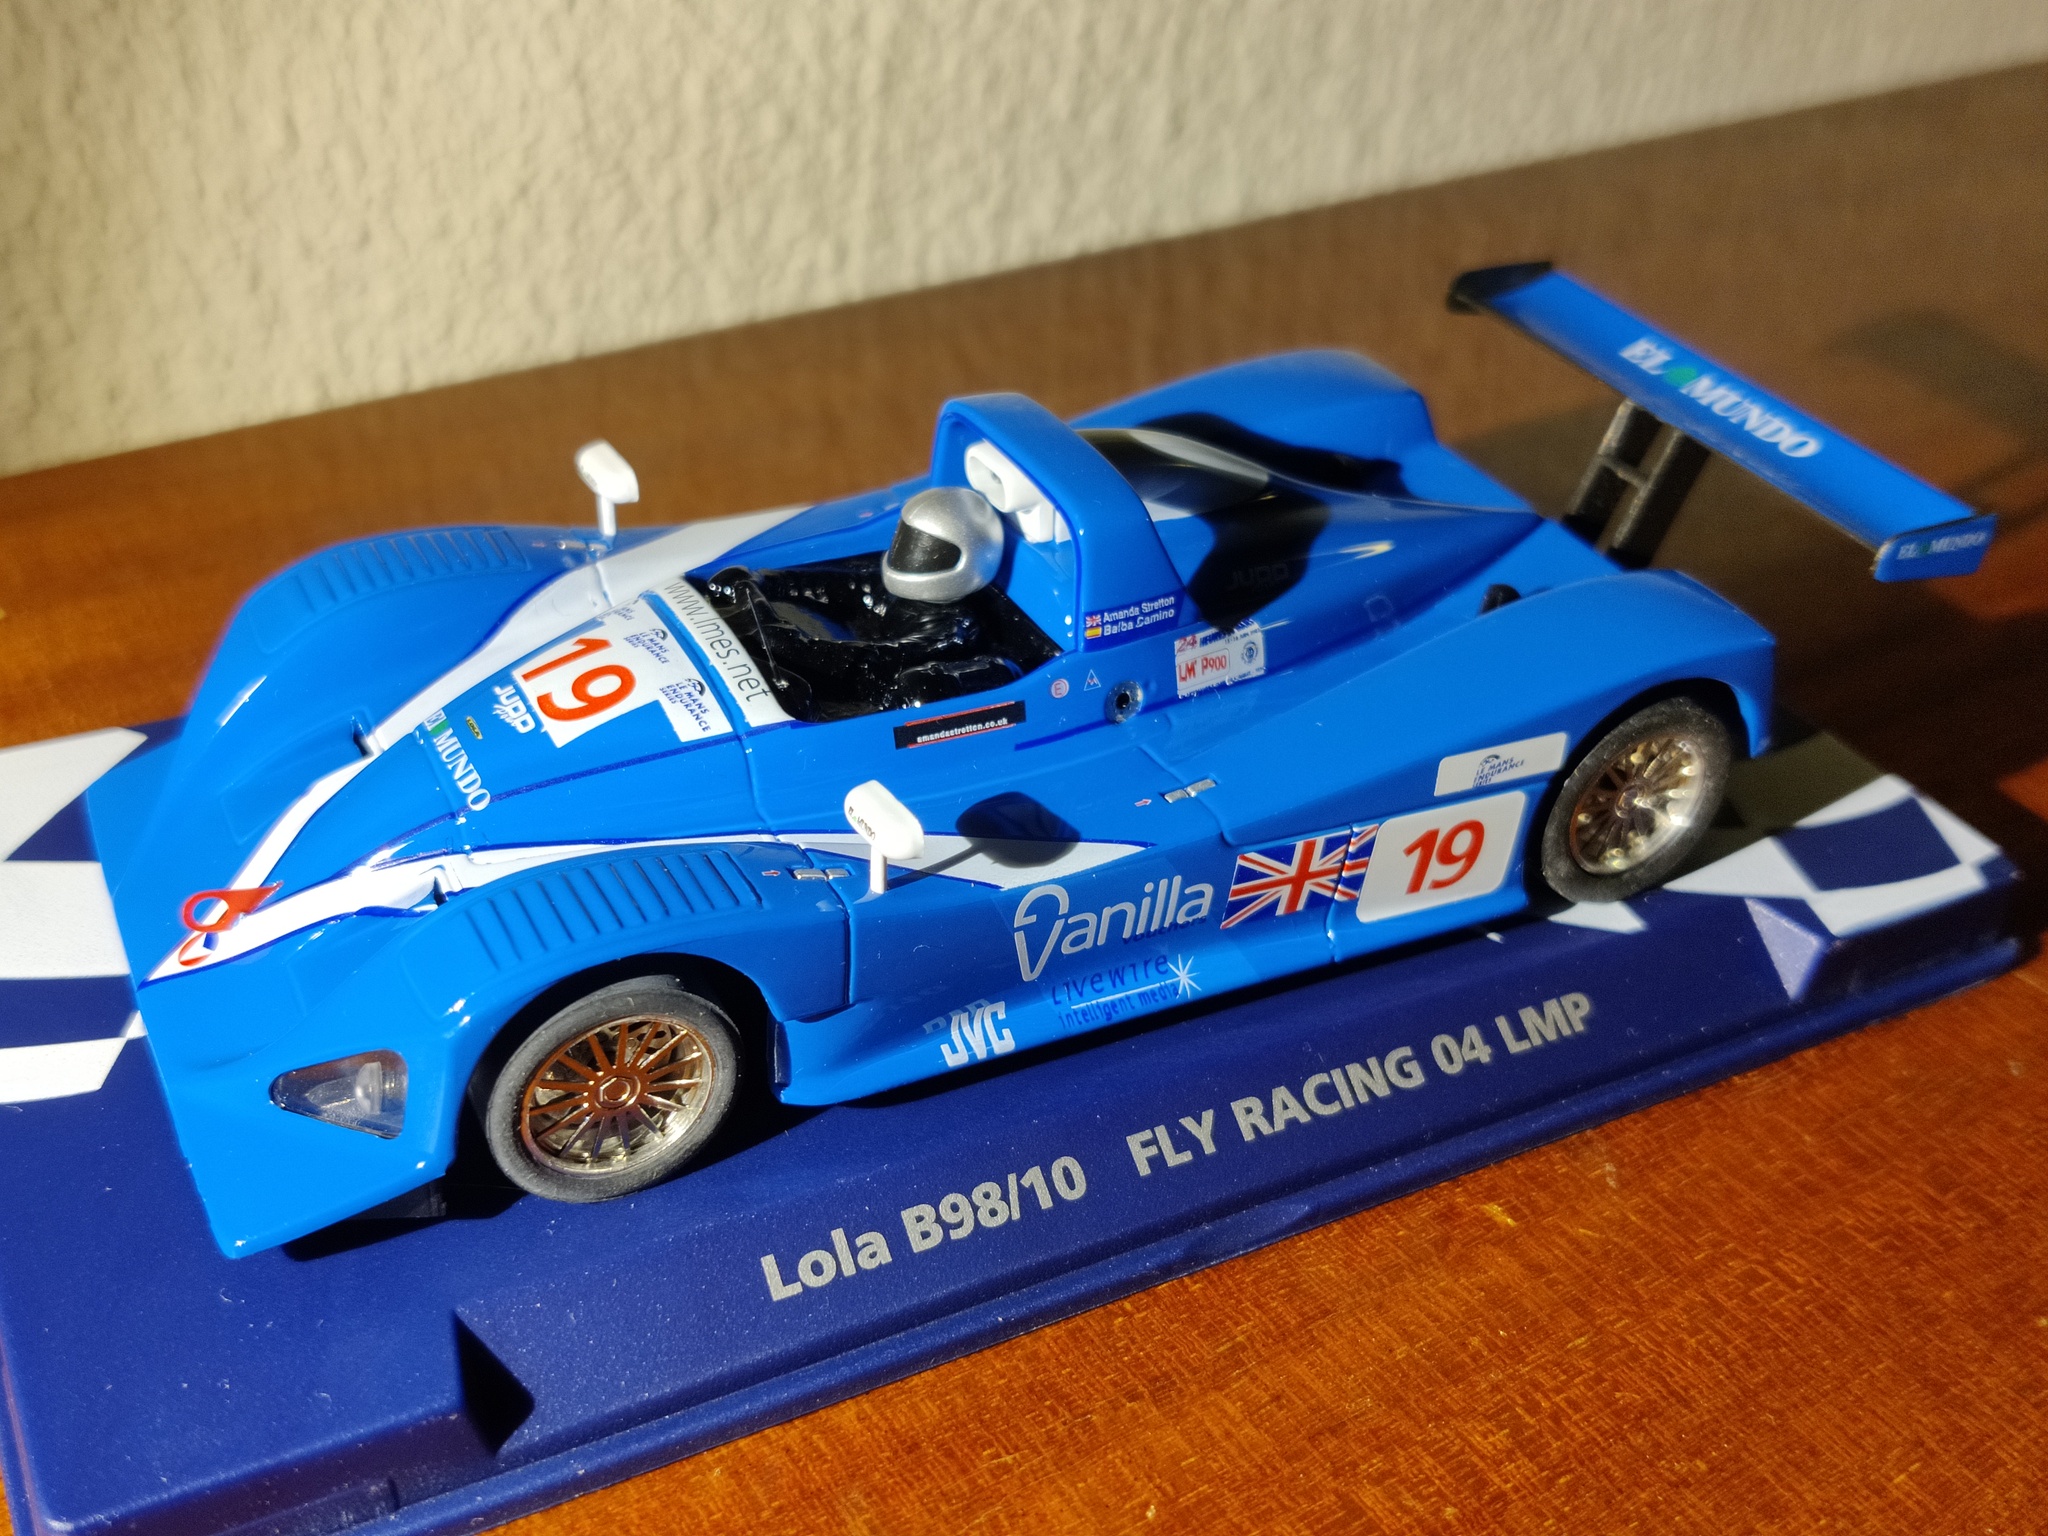 FLY Racing - Lola B98/10 - NY